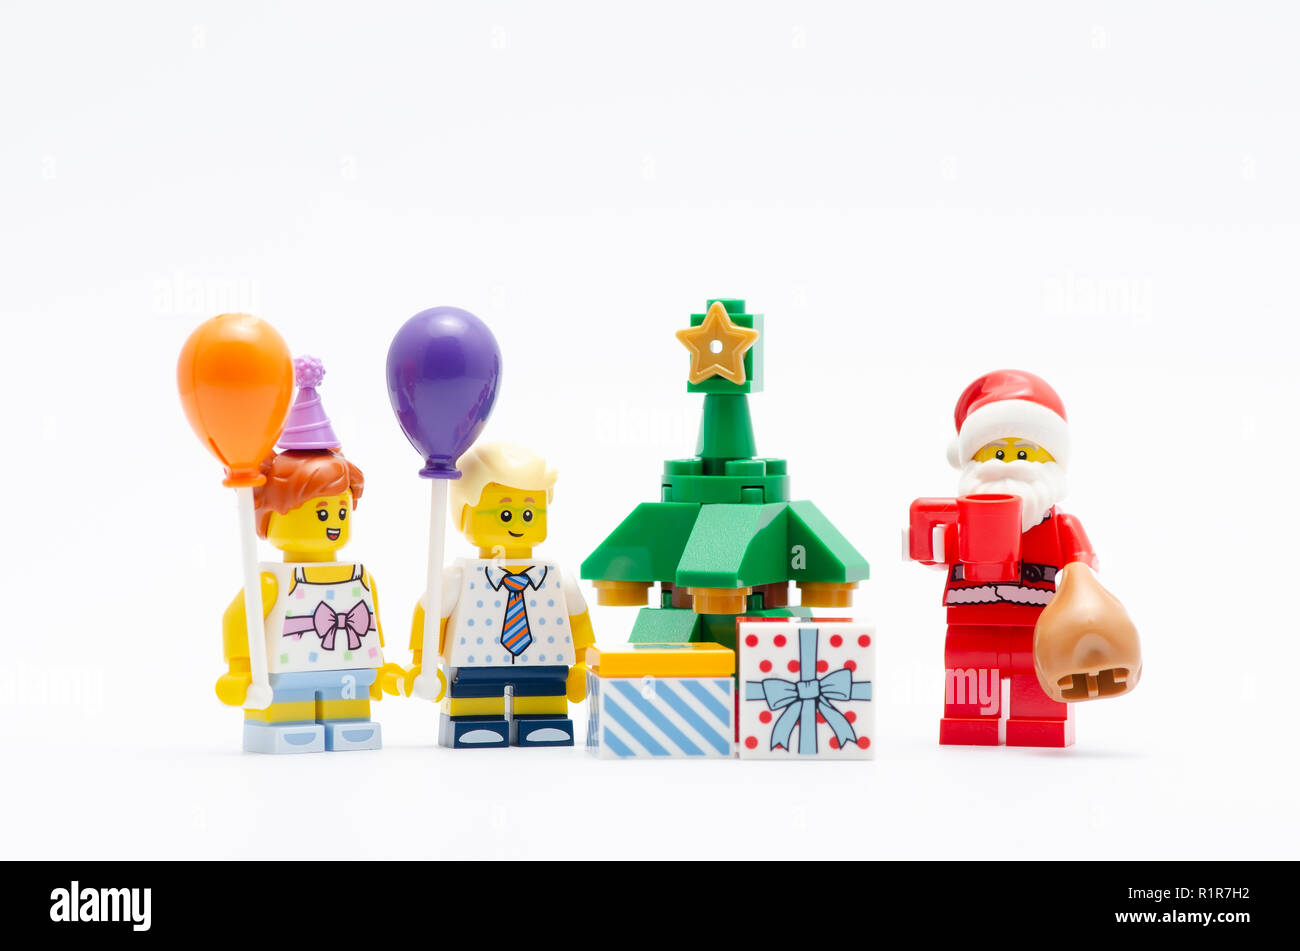 Lego santa claus Kinder Weihnachten feiern. Lego Minifiguren sind von der  Lego Gruppe hergestellt Stockfotografie - Alamy